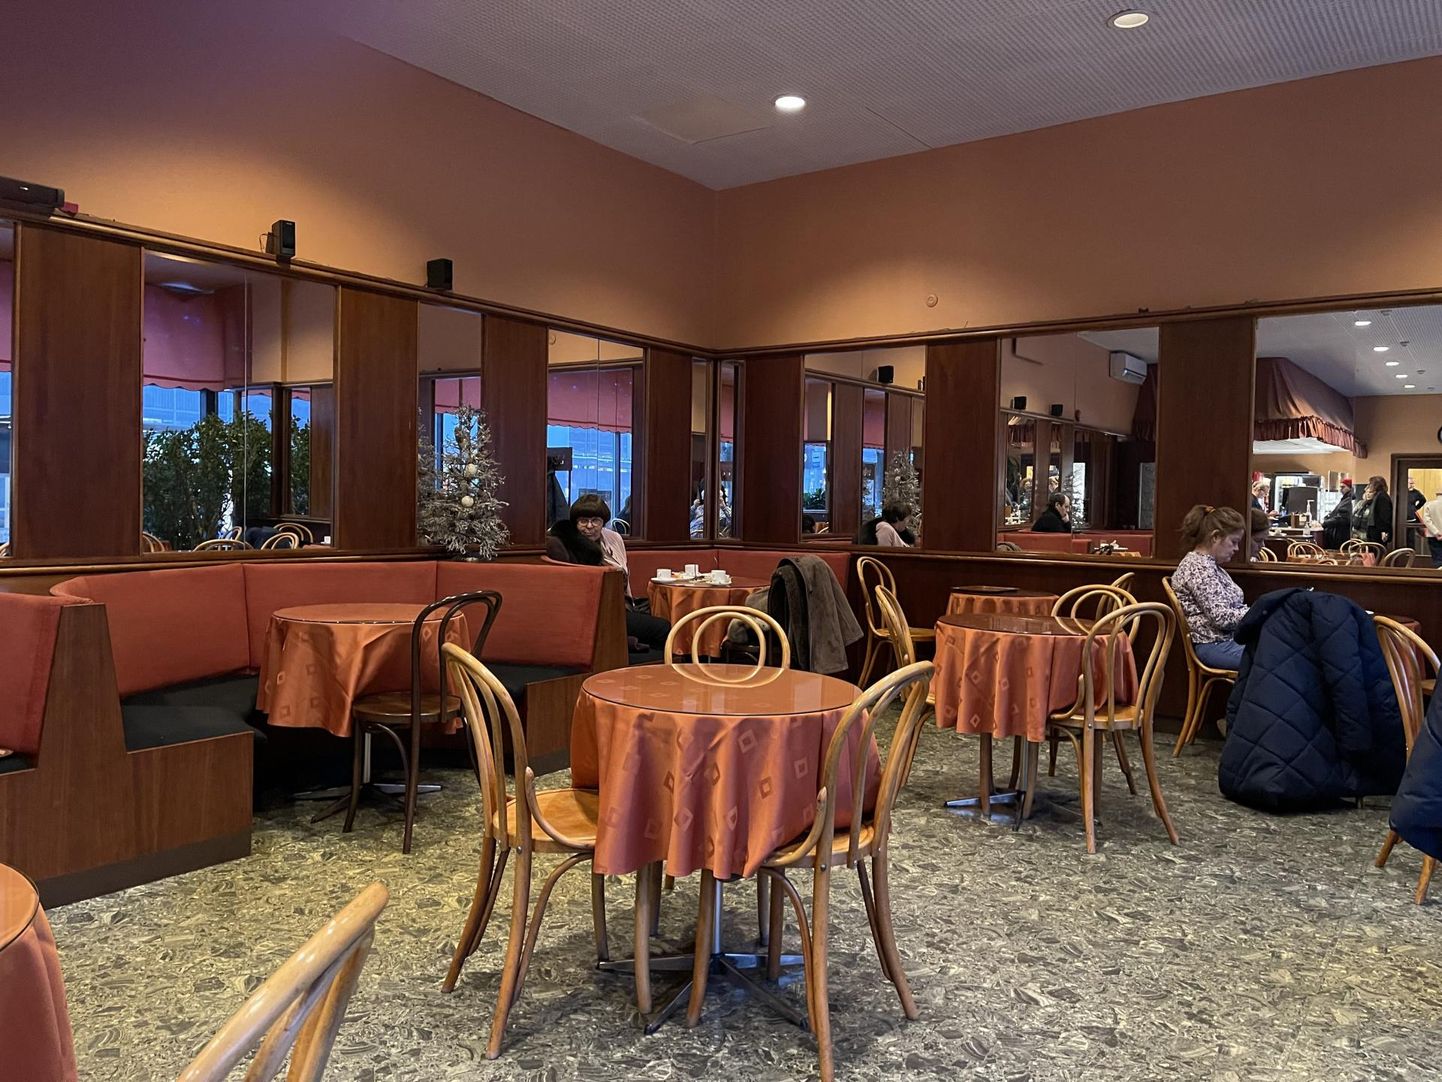 Viini toolid kõnelevad euroopalikust kohvikustiilist, peeglid muudavad saali optiliselt suuremaks. FOTO: Britt Rosen